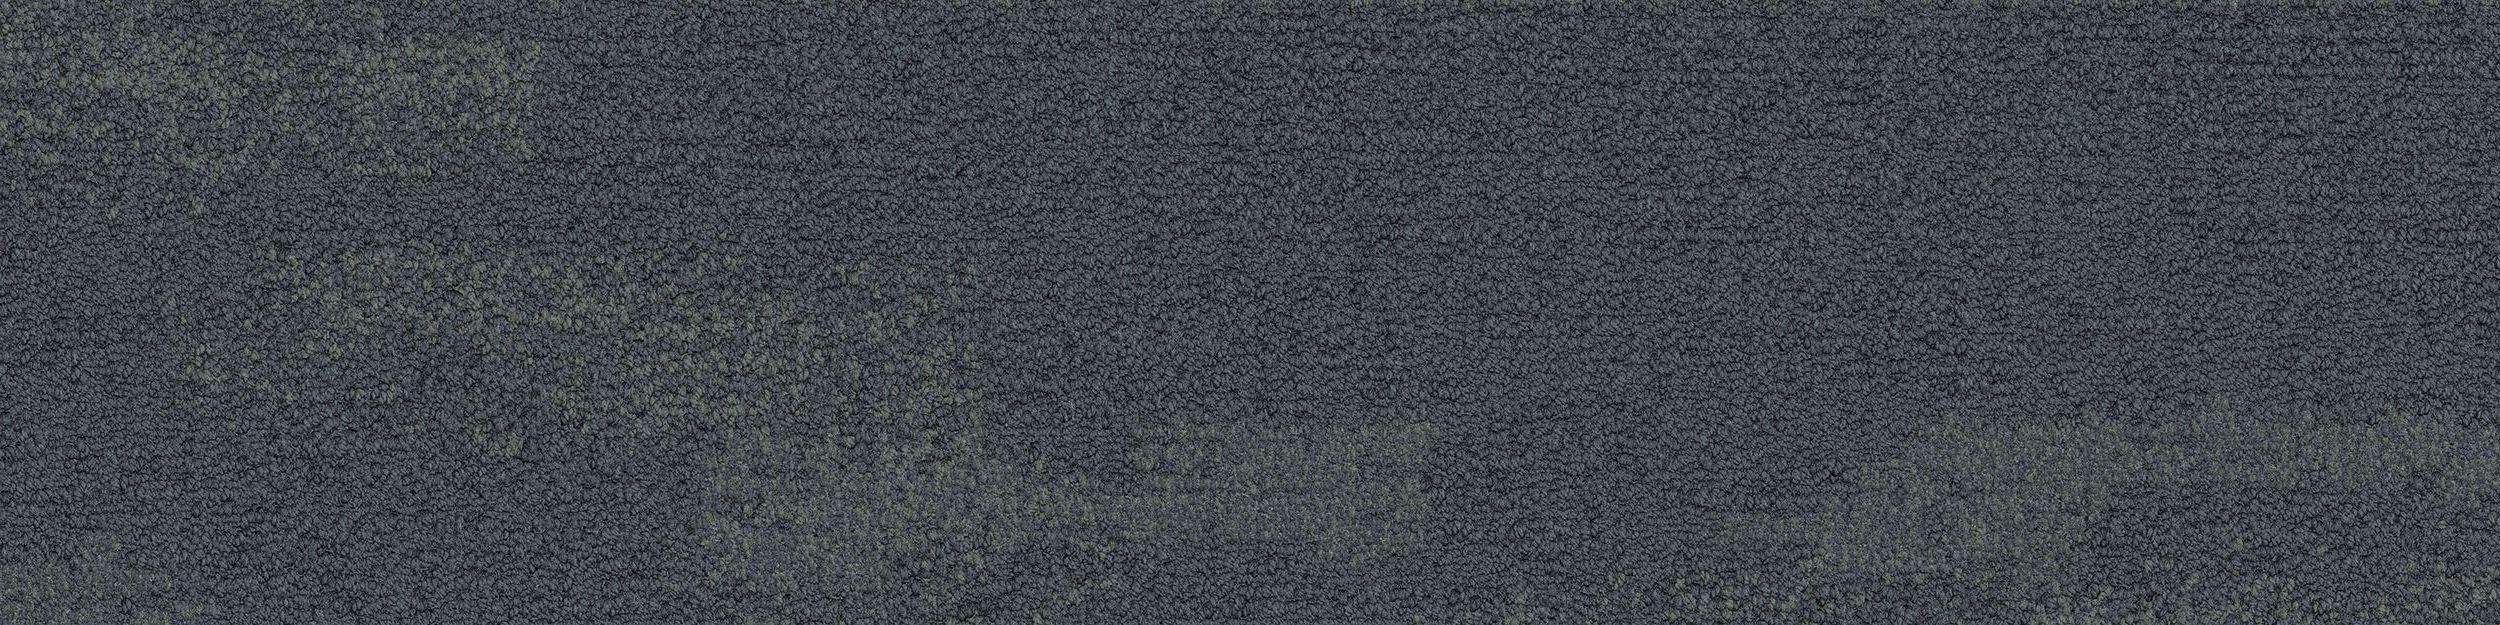 NF401 Carpet Tile In Shale afbeeldingnummer 2